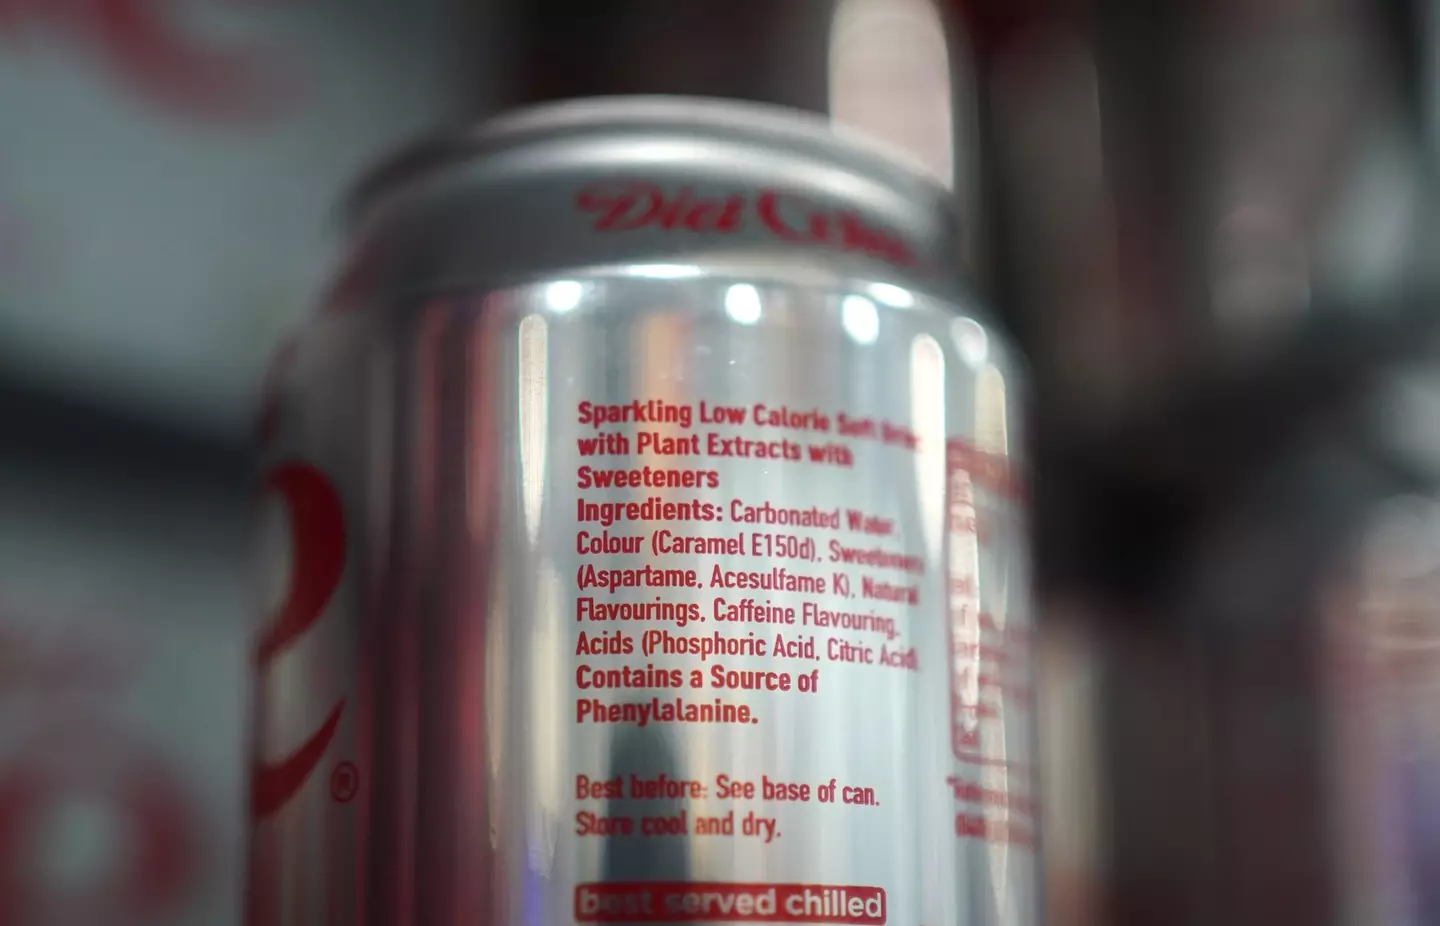 The sweetener is found in Diet Coke.